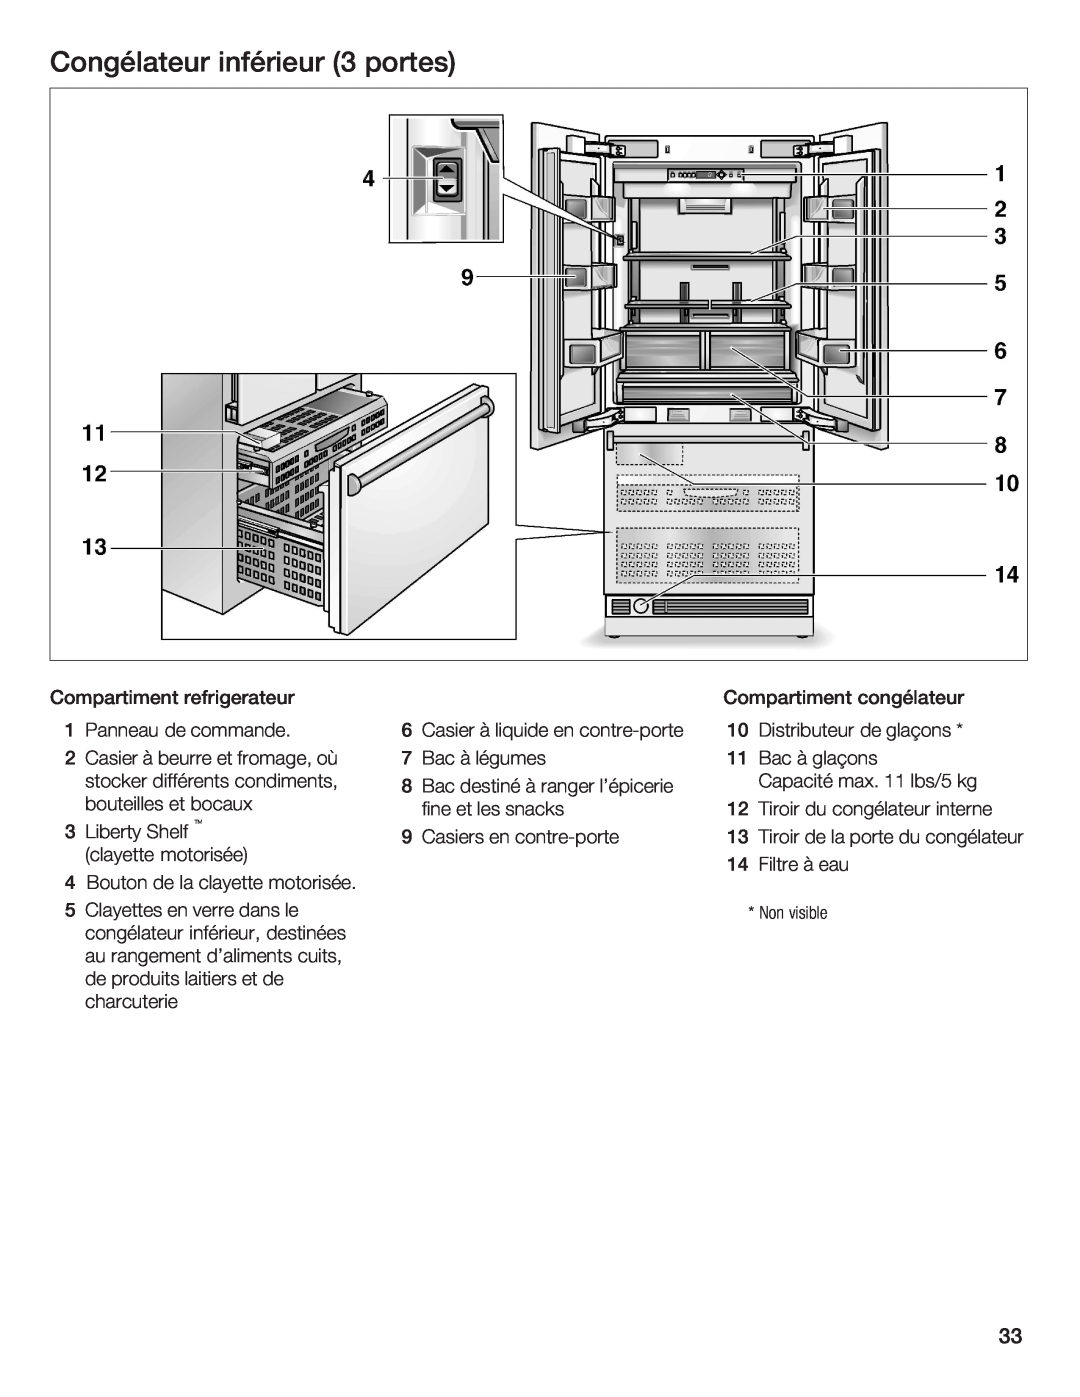 Thermador 9000189698 manual Congélateur inférieur 3 portes, refrigerateur, Compartiment congélateur 